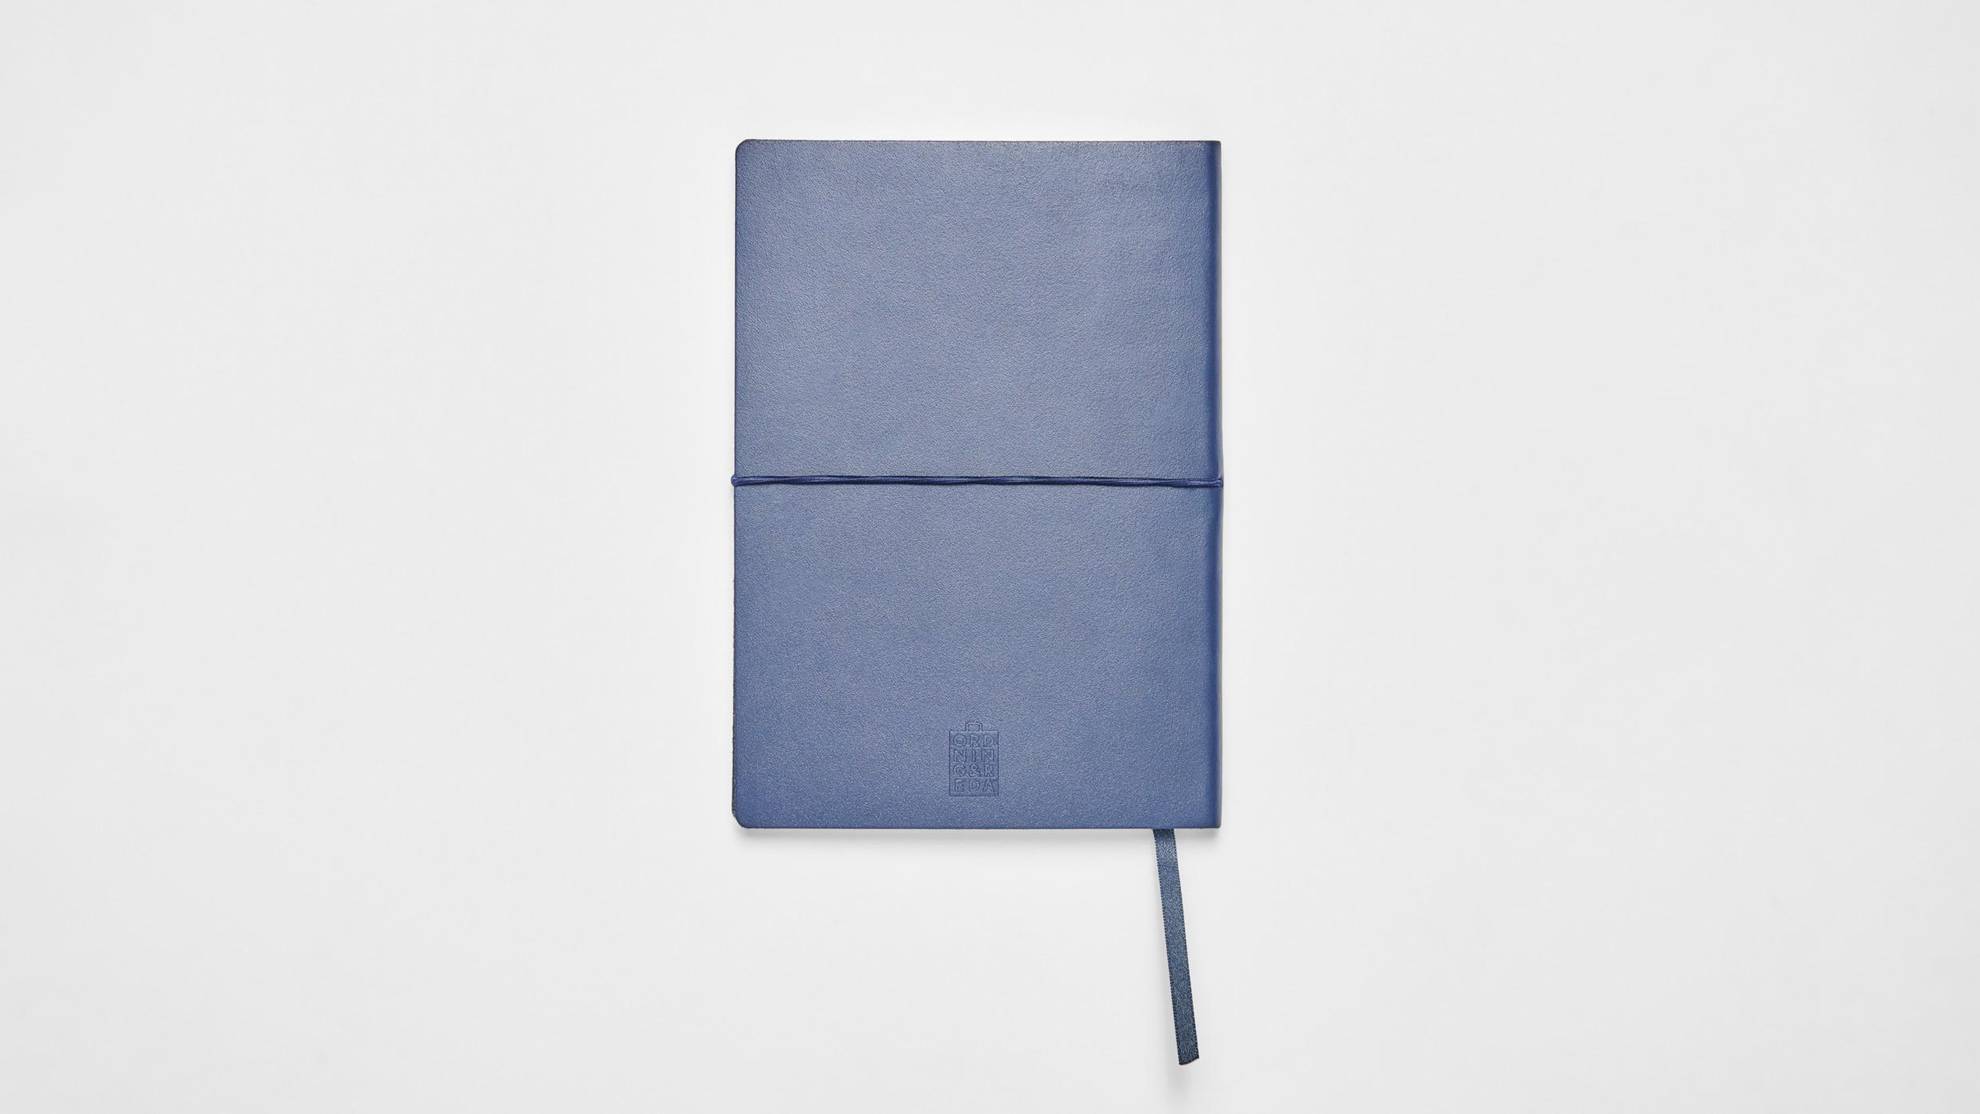 Eine blaue Schutzhülle für ein Tablet einer weißen Fläche.